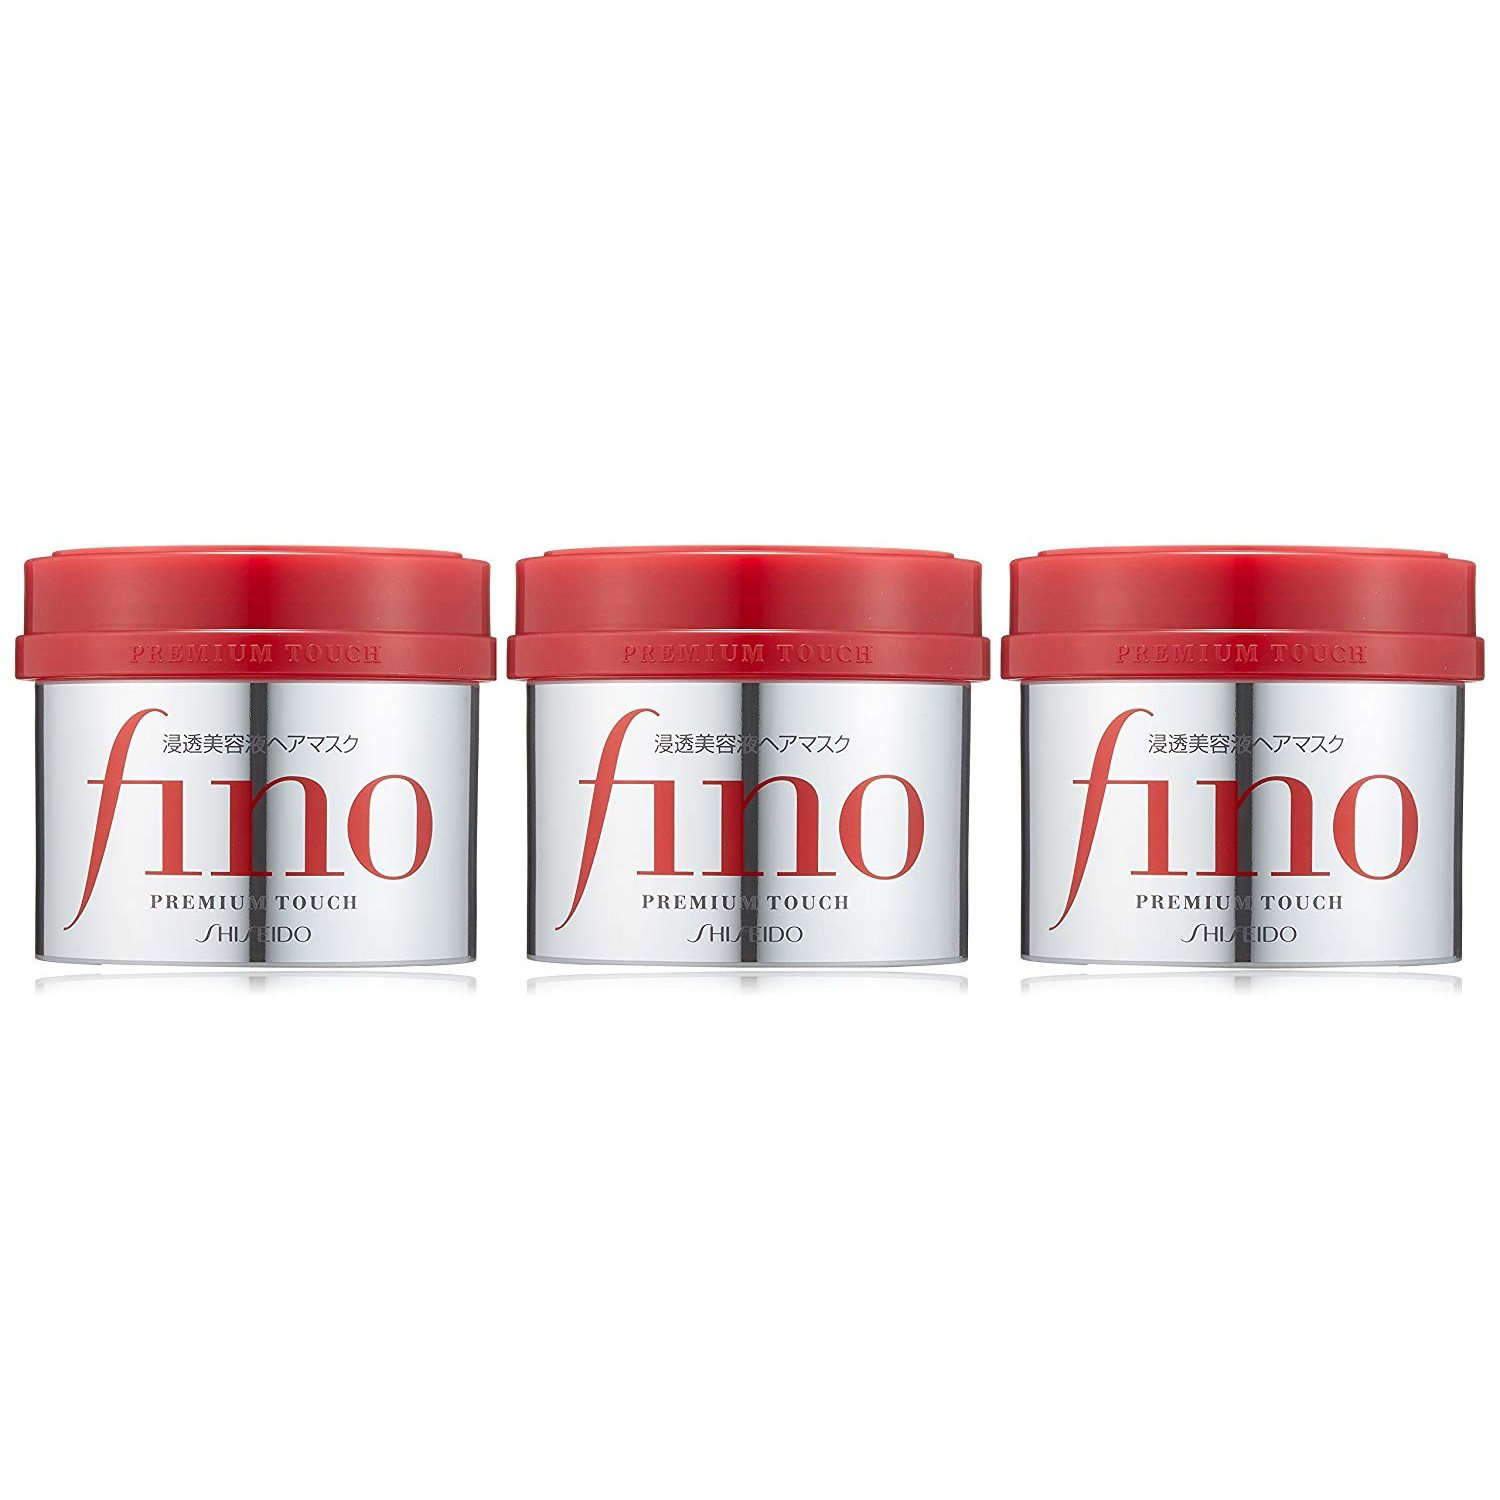 【中亚Prime会员】Fino 美容液浸透护发膜 230g×3罐装 到手价89.5元 